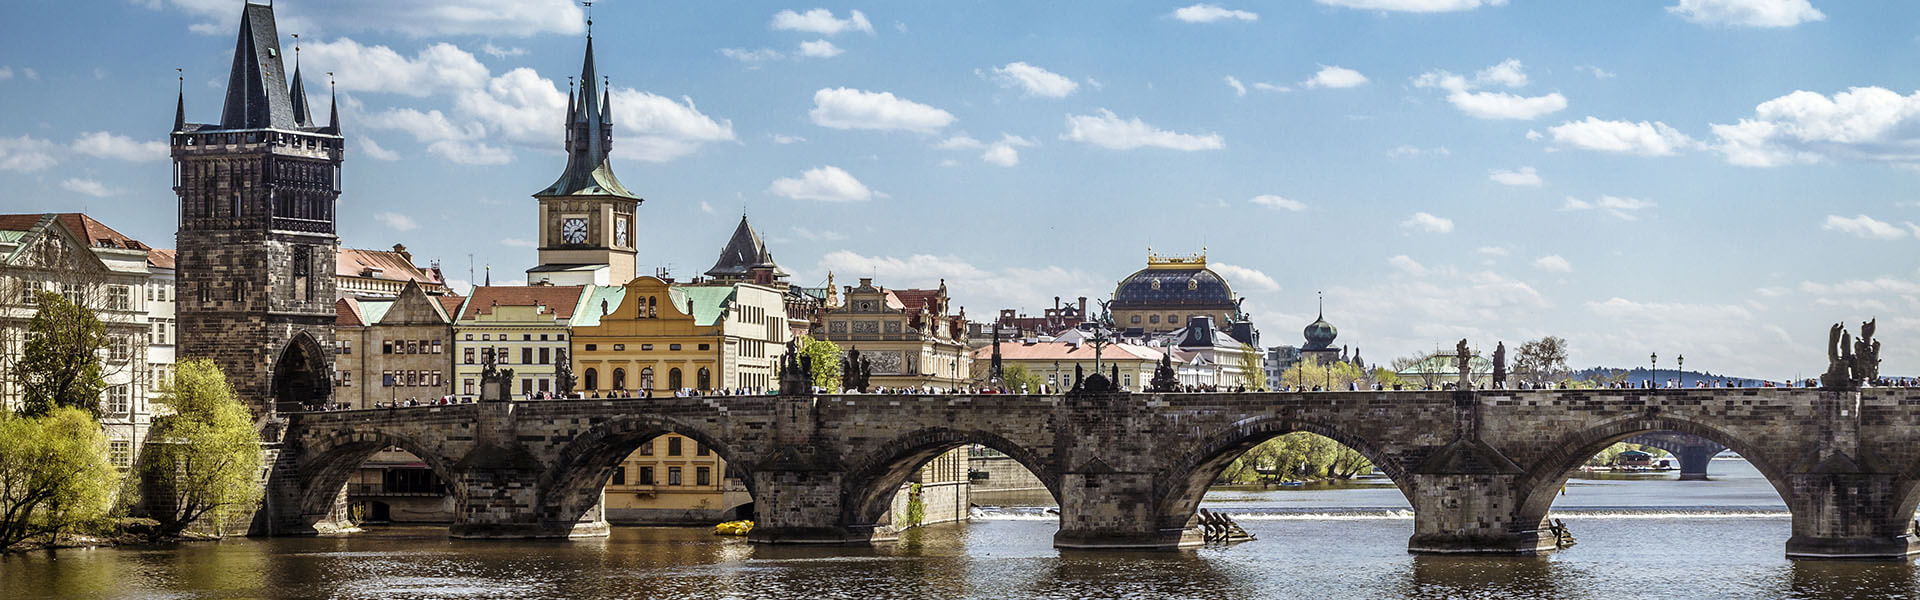 Prag – Karlsbrücke, Prager Burg, Veitsdom 